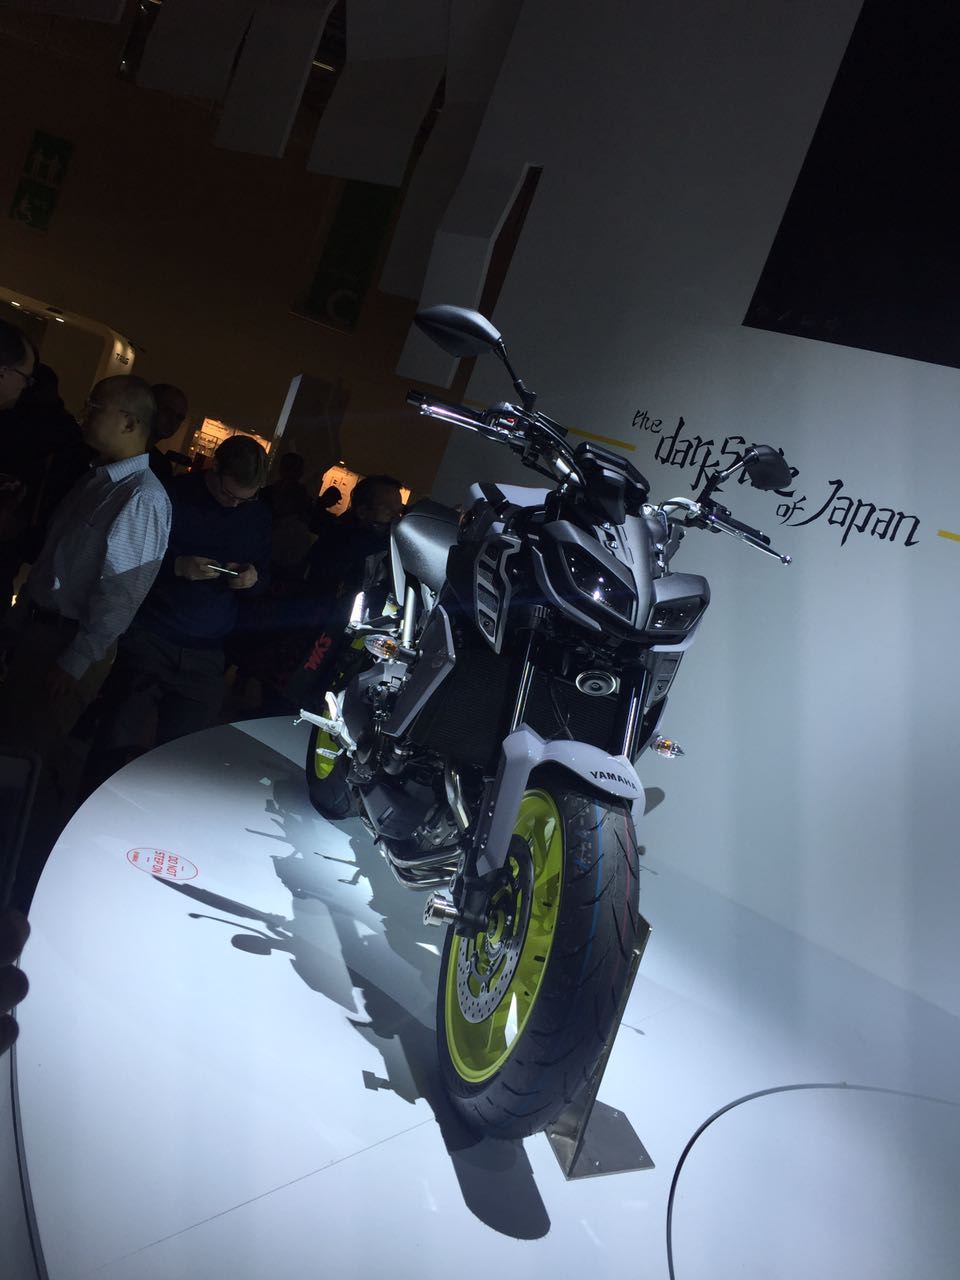 Yeni 2017 Yamaha MT-09 - Intermot 2016 4. İçerik Fotoğrafı